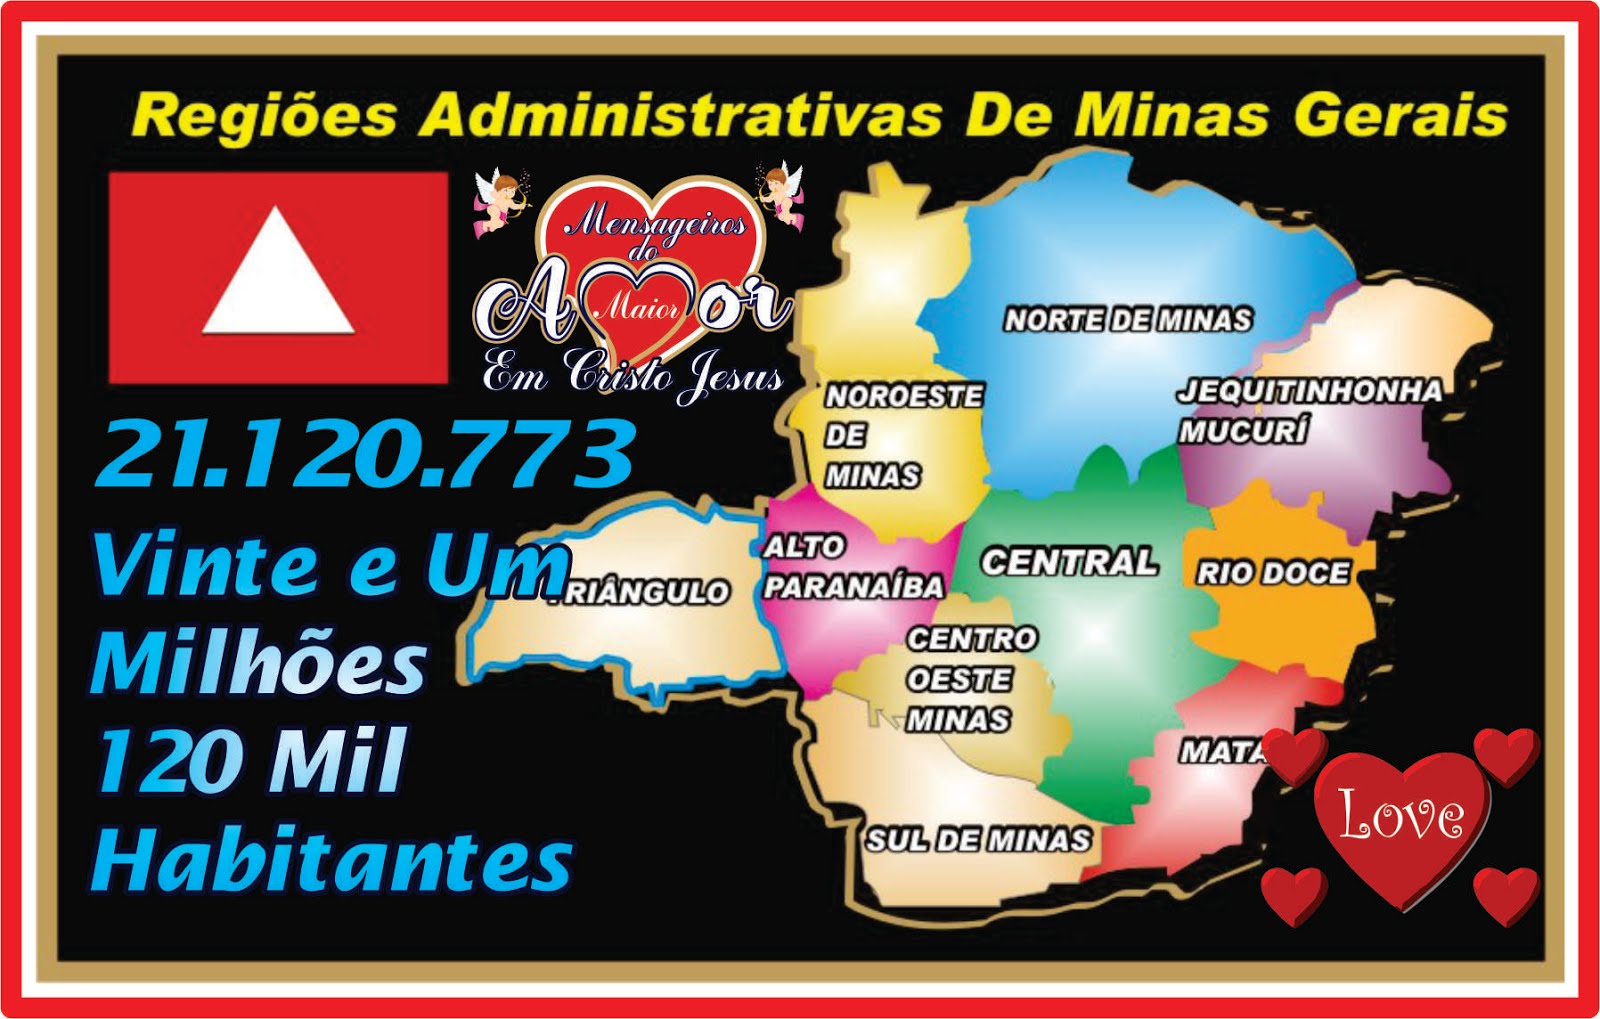 Regiões Administrativas do Estado de Minas Gerais